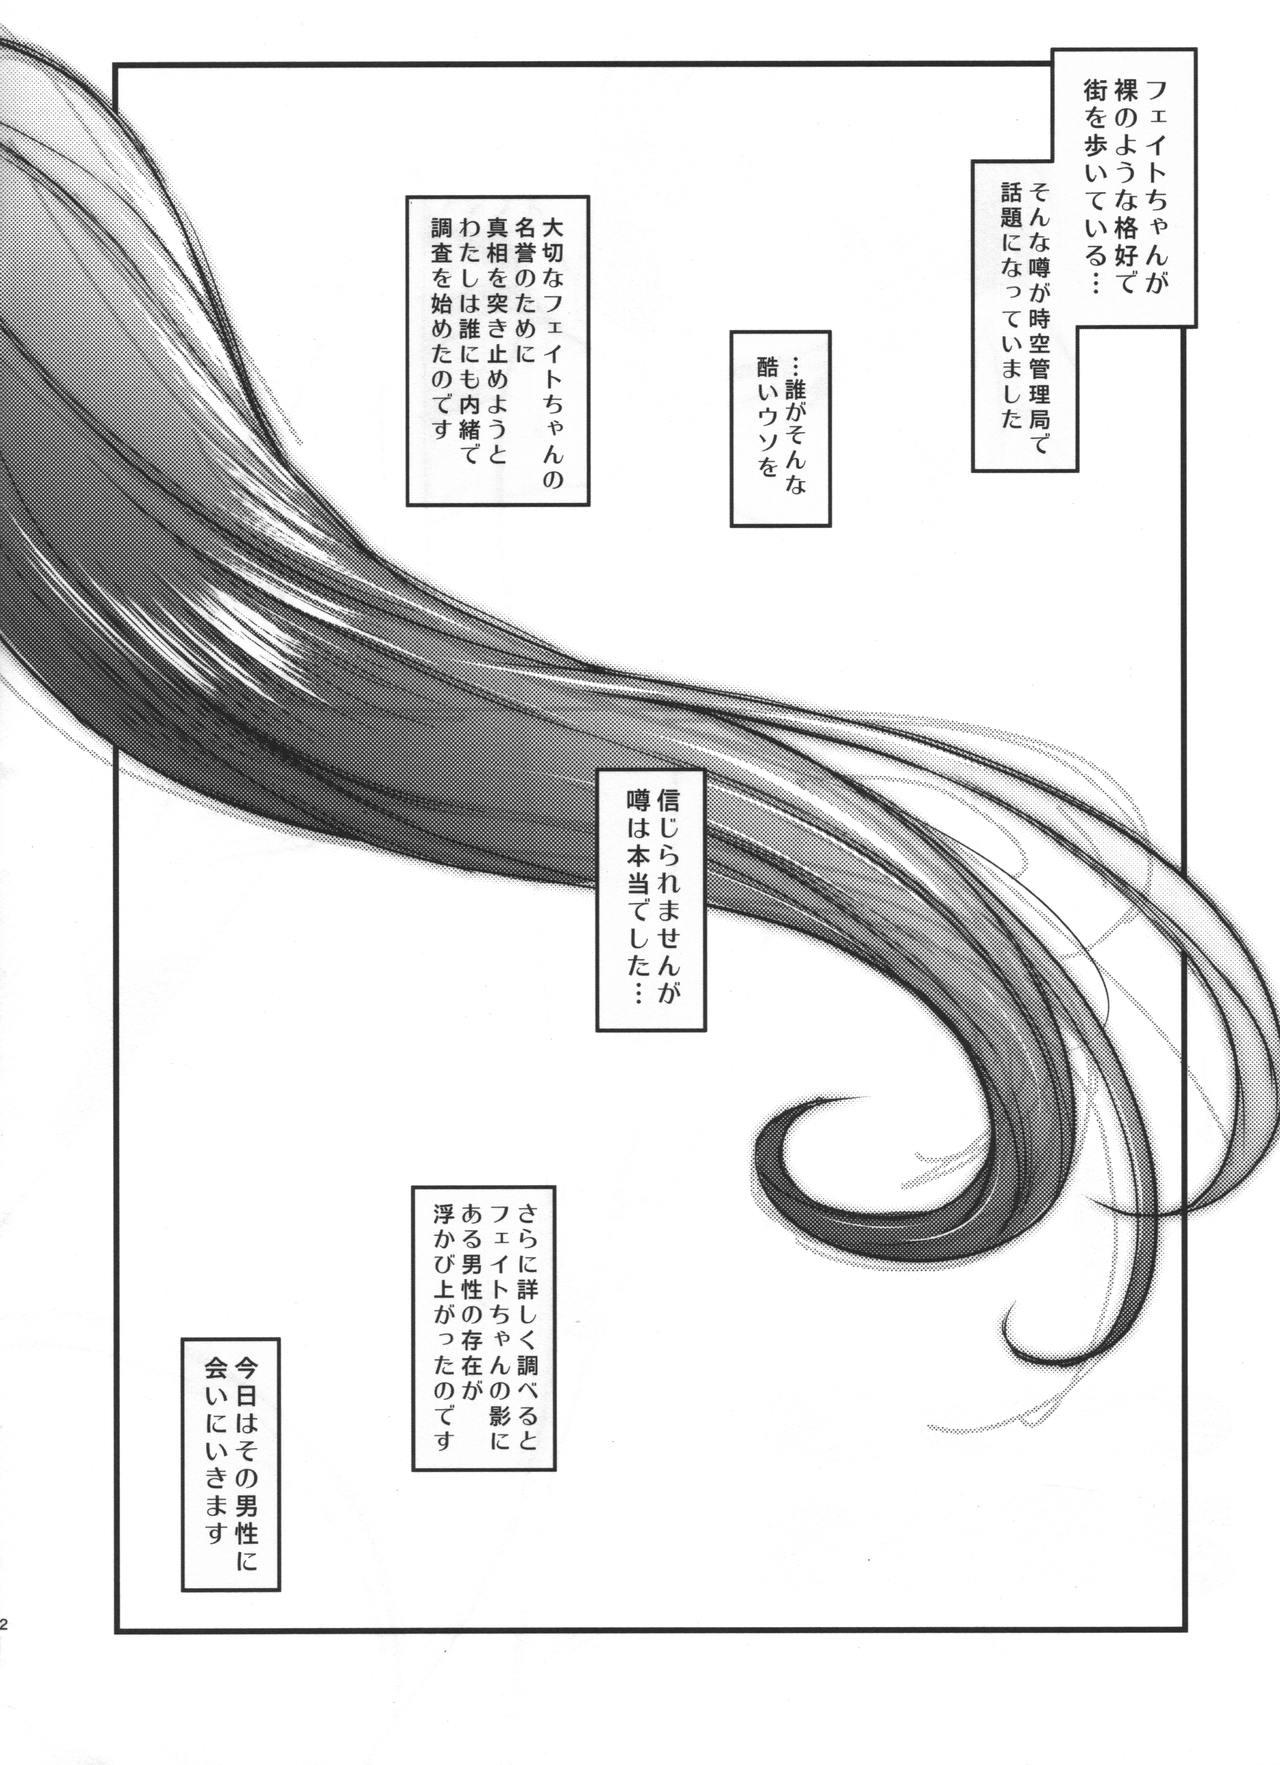 Hot Mom C93 Omakebon - Mahou shoujo lyrical nanoha | magical girl lyrical nanoha Thylinh - Page 2